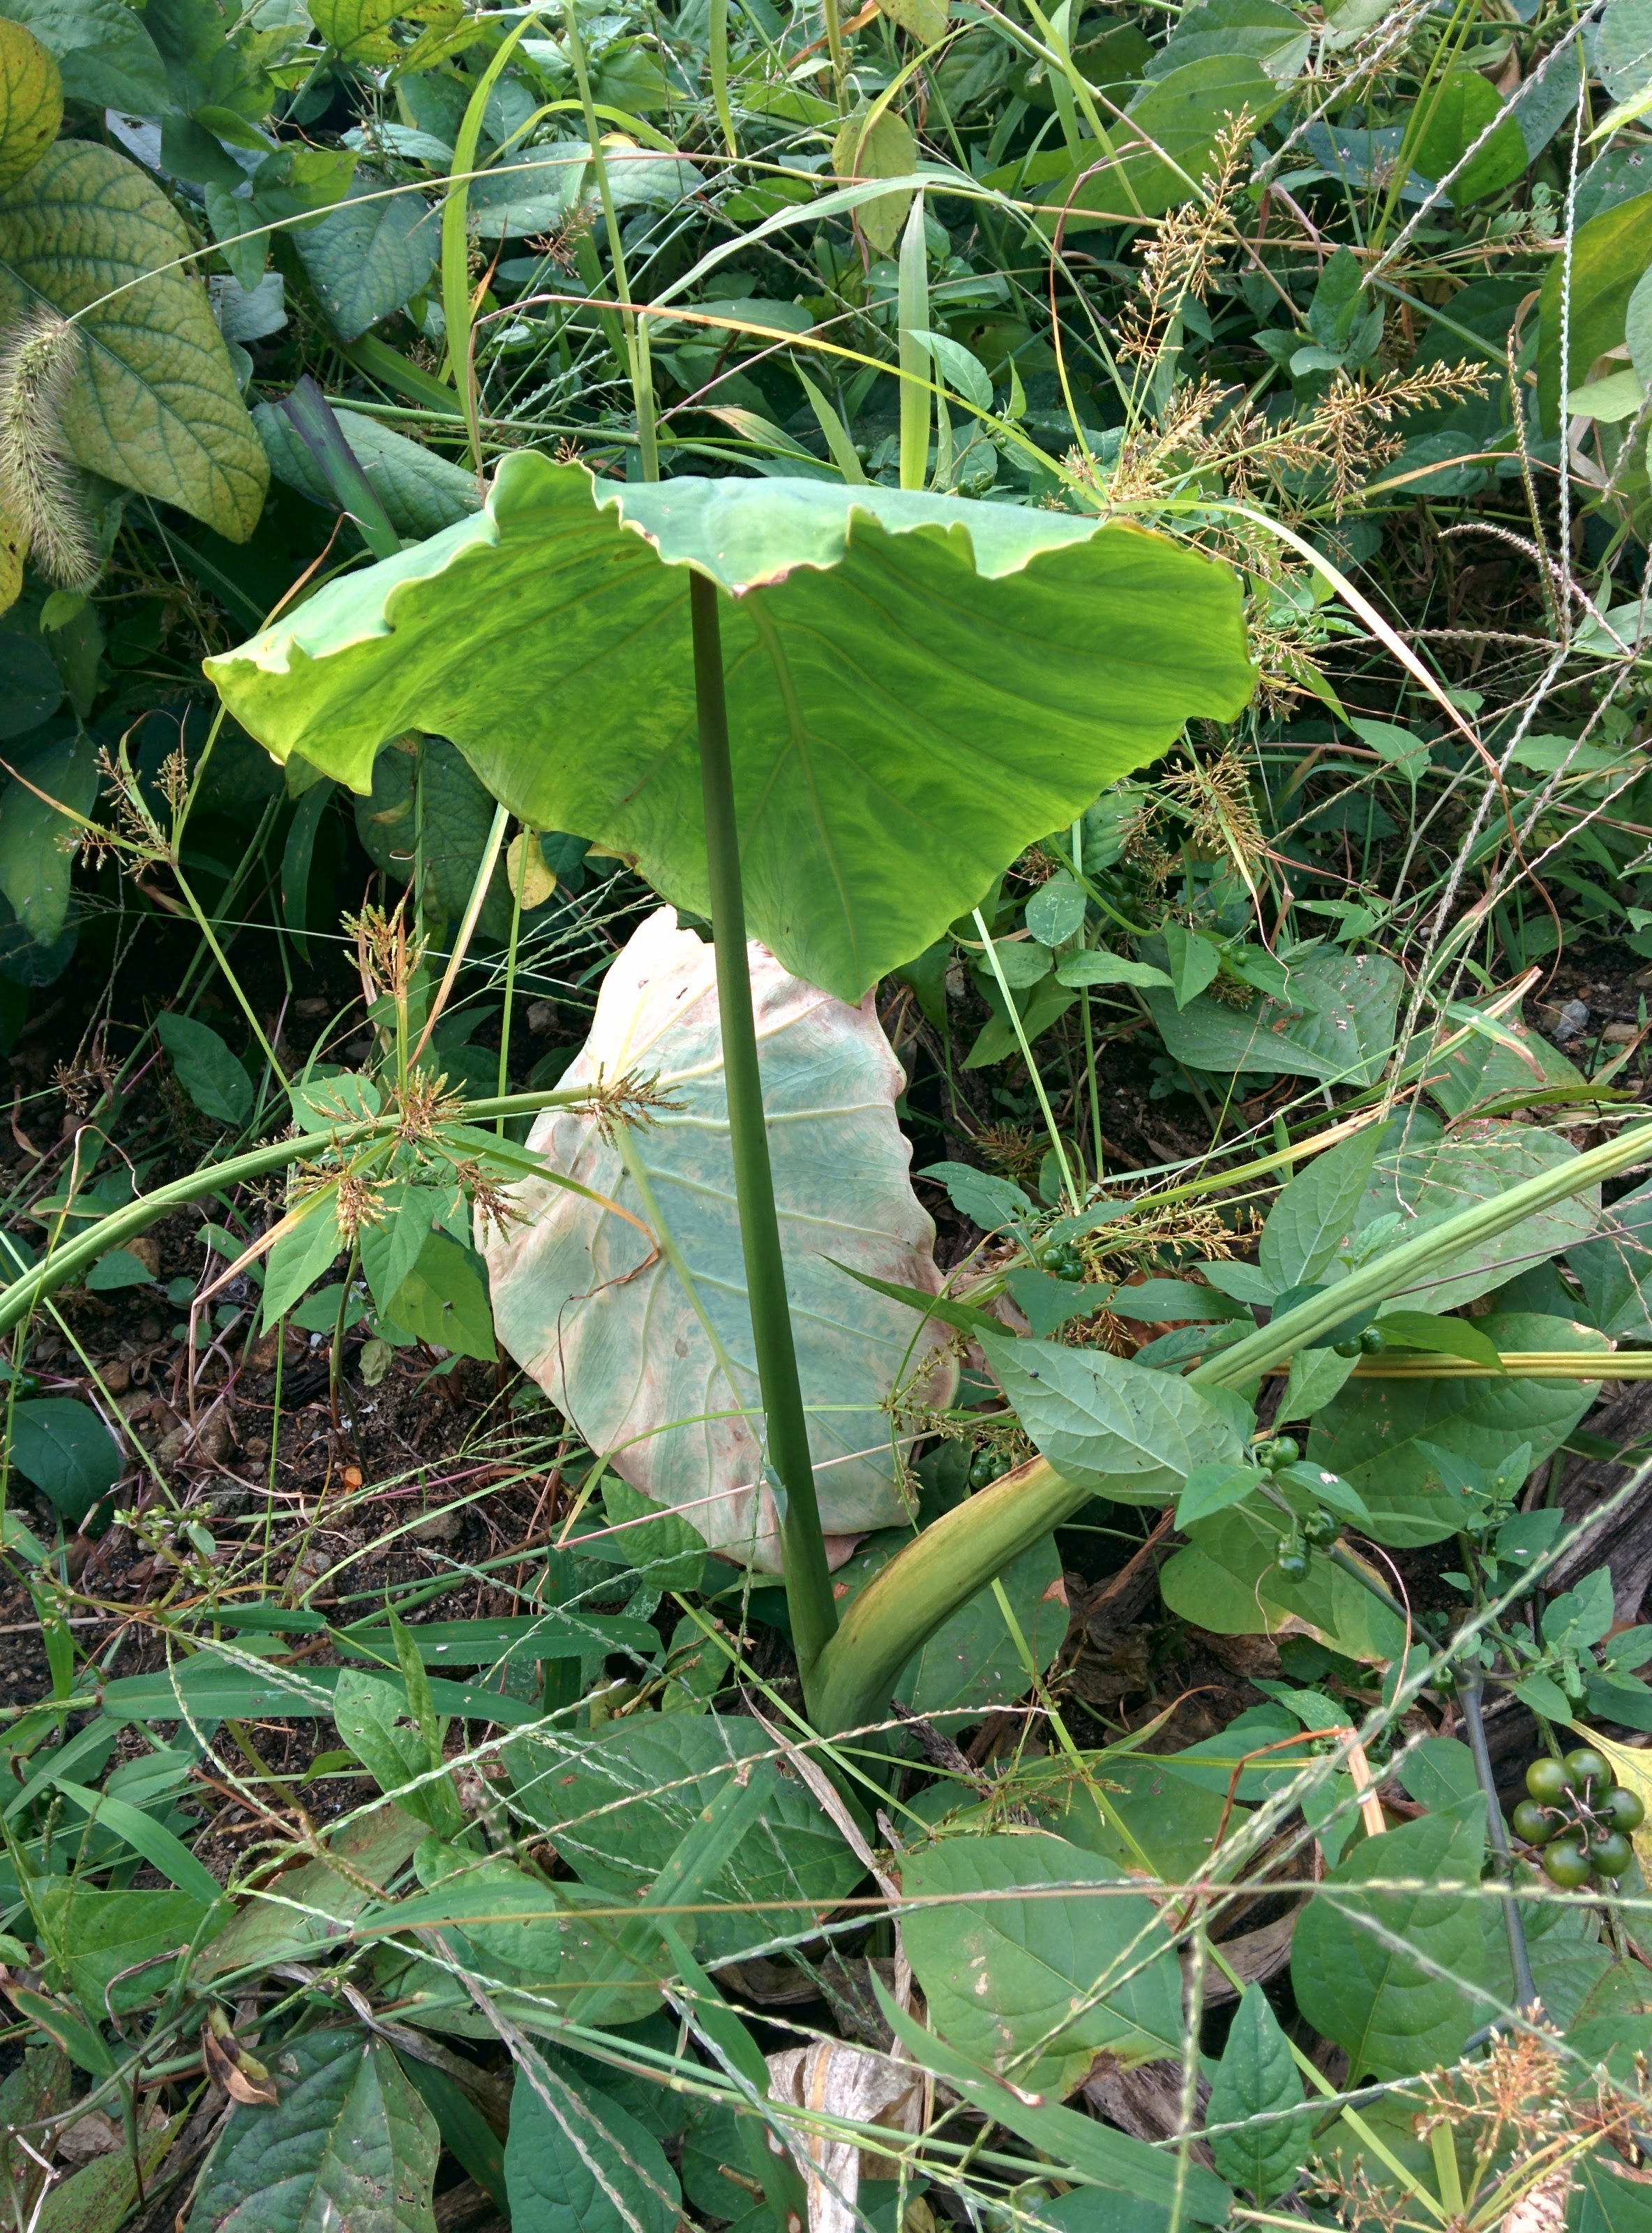 IMG_20151003_160425.jpg 우산처럼 넓은 잎을 가진 토란